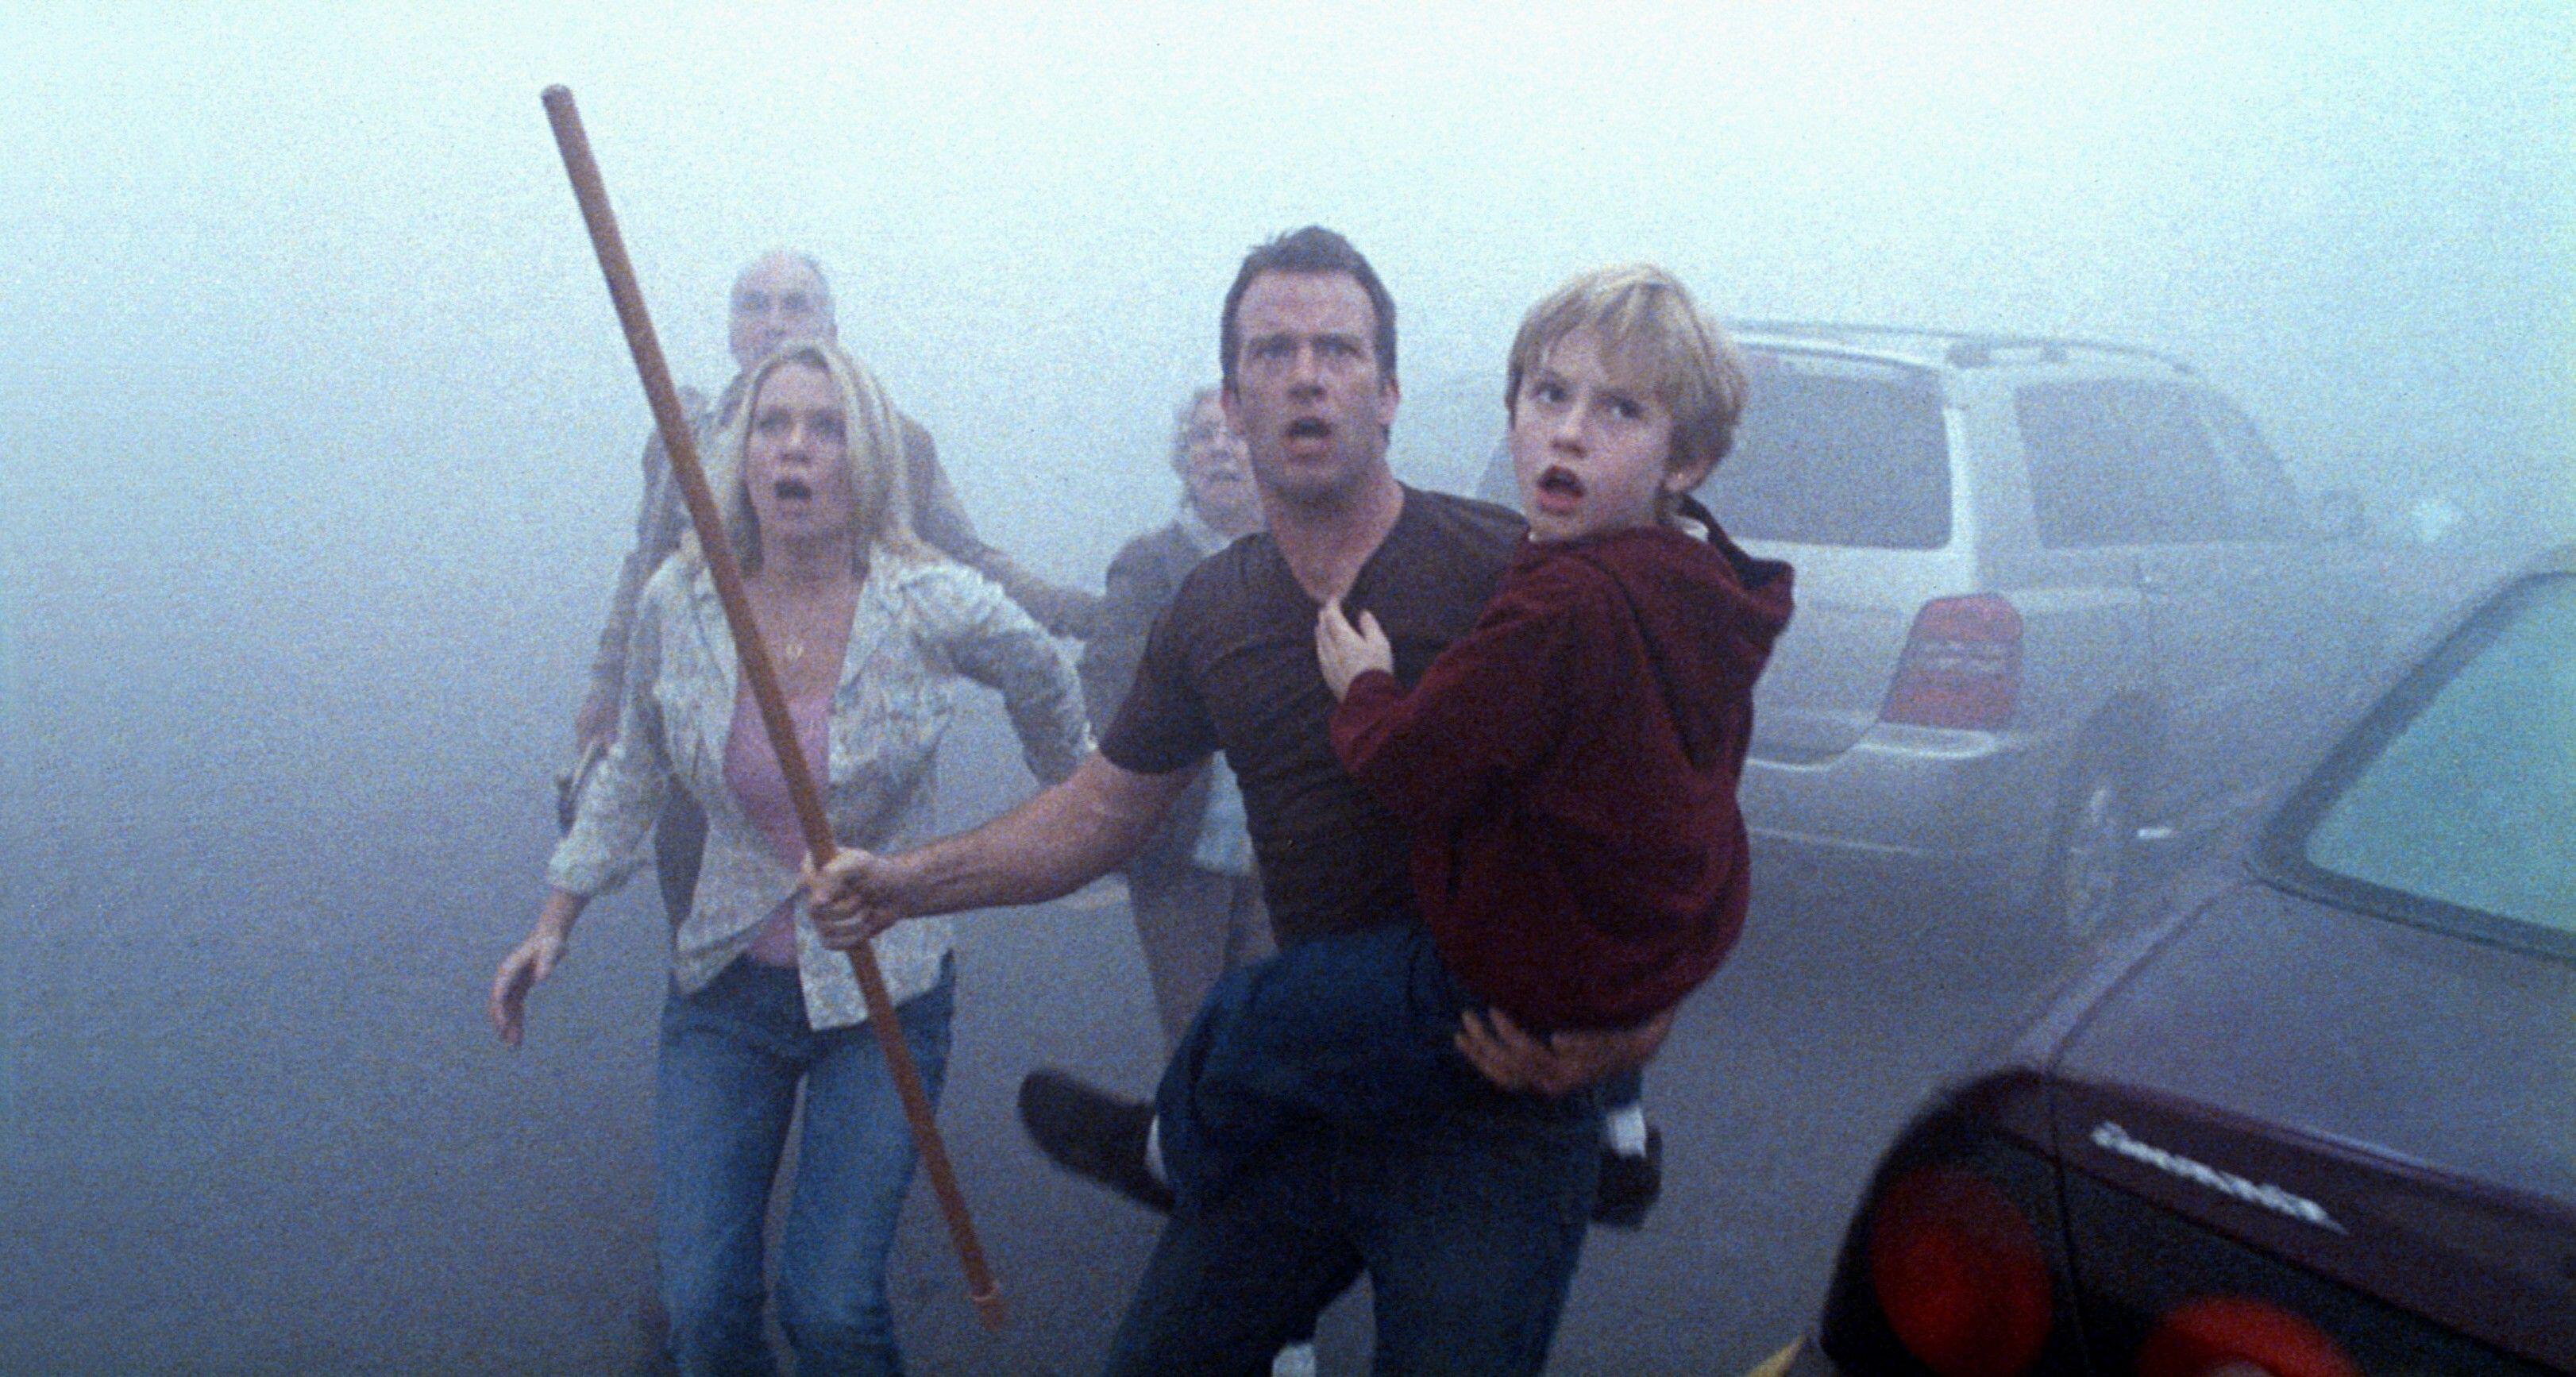 (De gauche à droite) Laurie Holden dans le rôle d'Amanda, Thomas Jane dans le rôle de David dans la brume, montrant son inquiétude, dans The Mist (2007)